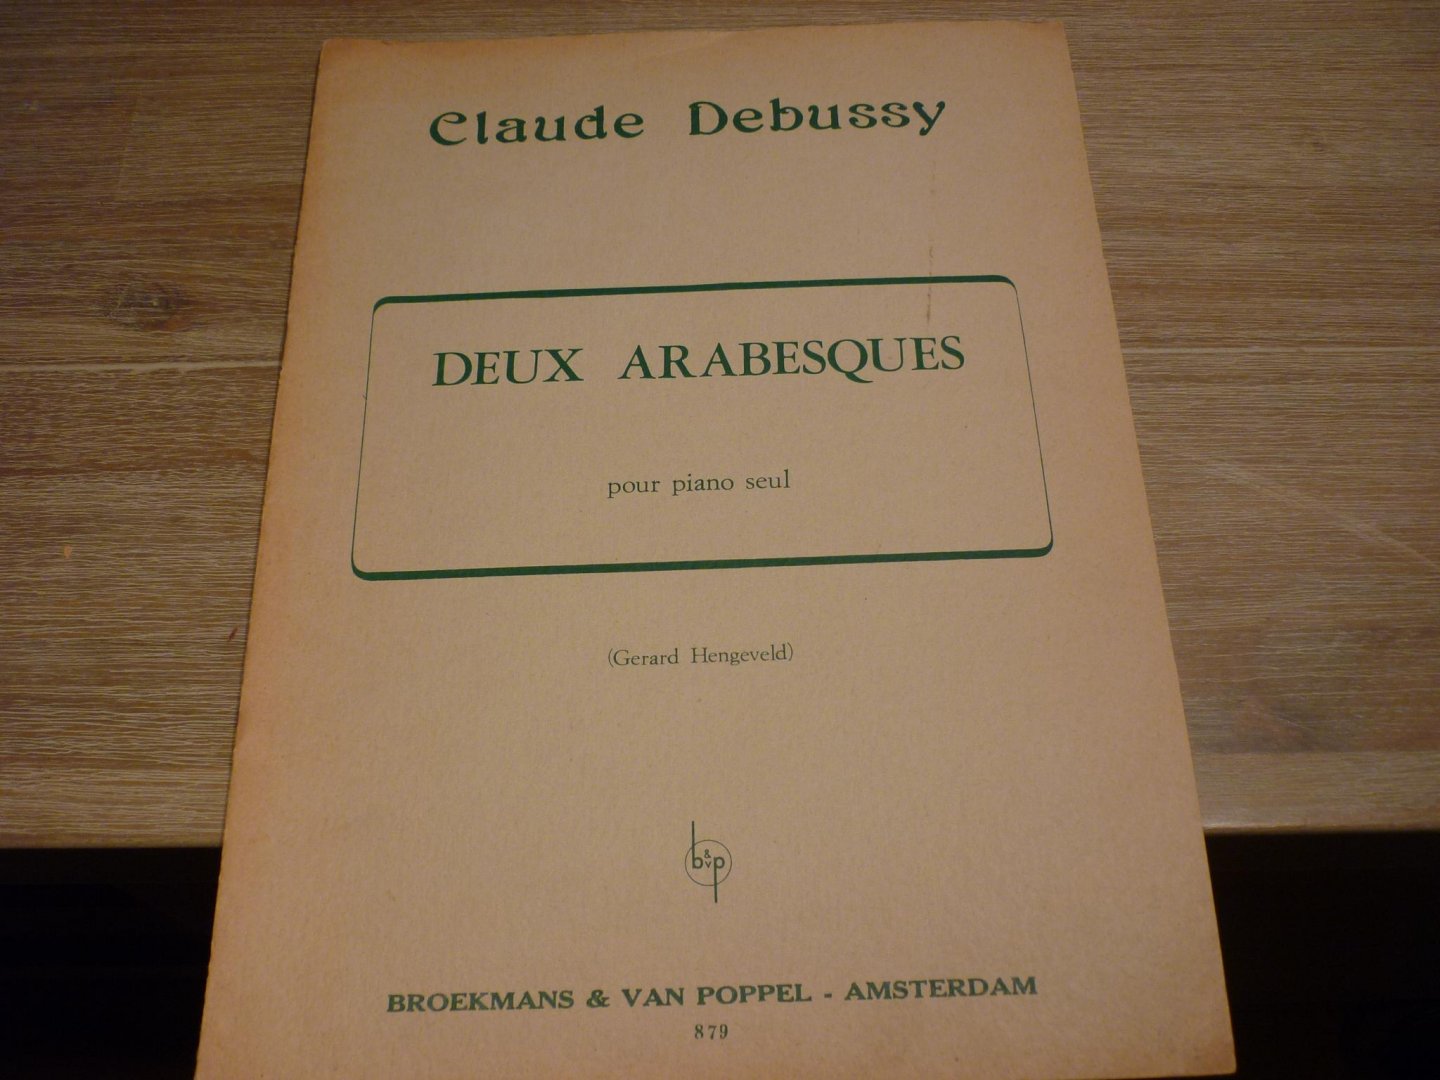 Debussy; Claude (1862-1918) - Deux Arabesques pour piano solo seul (Gerard Hengeveld)